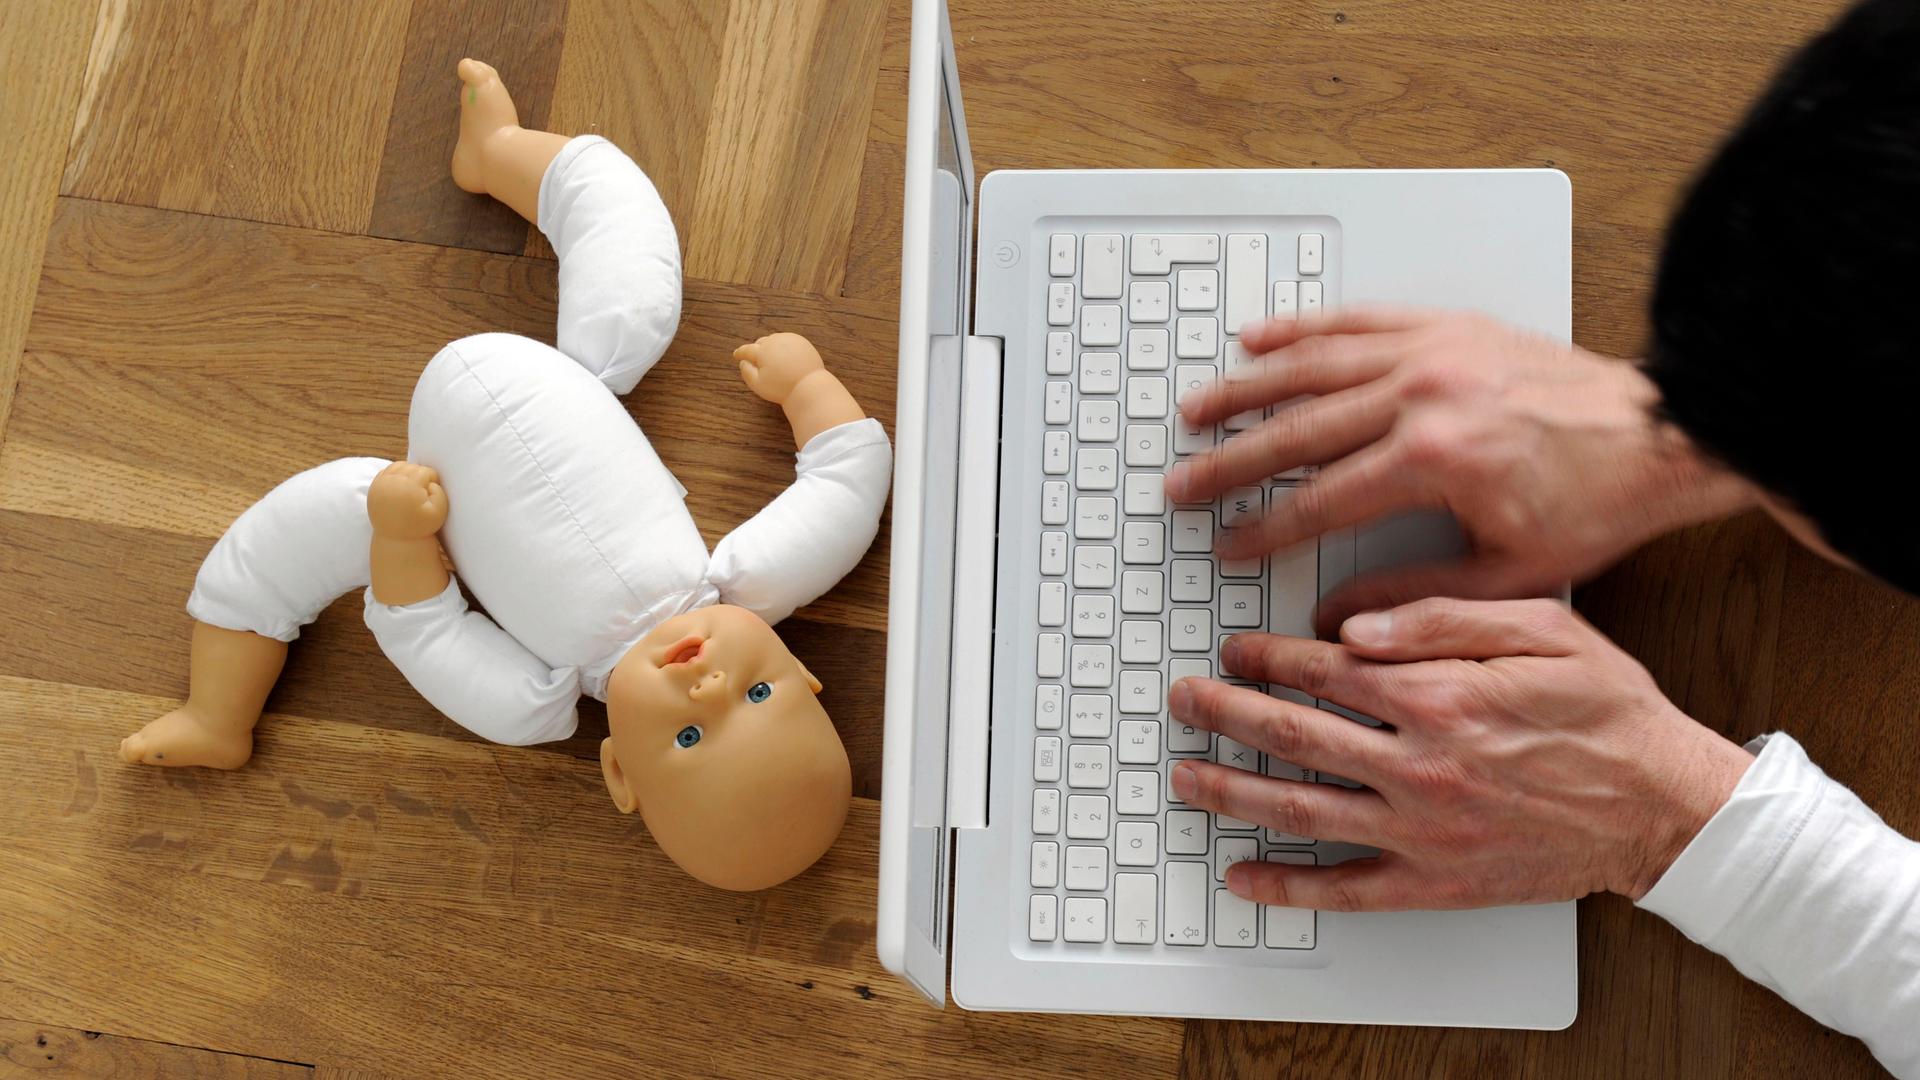 Symbolfoto zum Thema Kindesmissbrauch und Internetpornografie: Die Hände eines Mannes an einer Tastatur, daneben eine zerbrochene Kinderpuppe. 